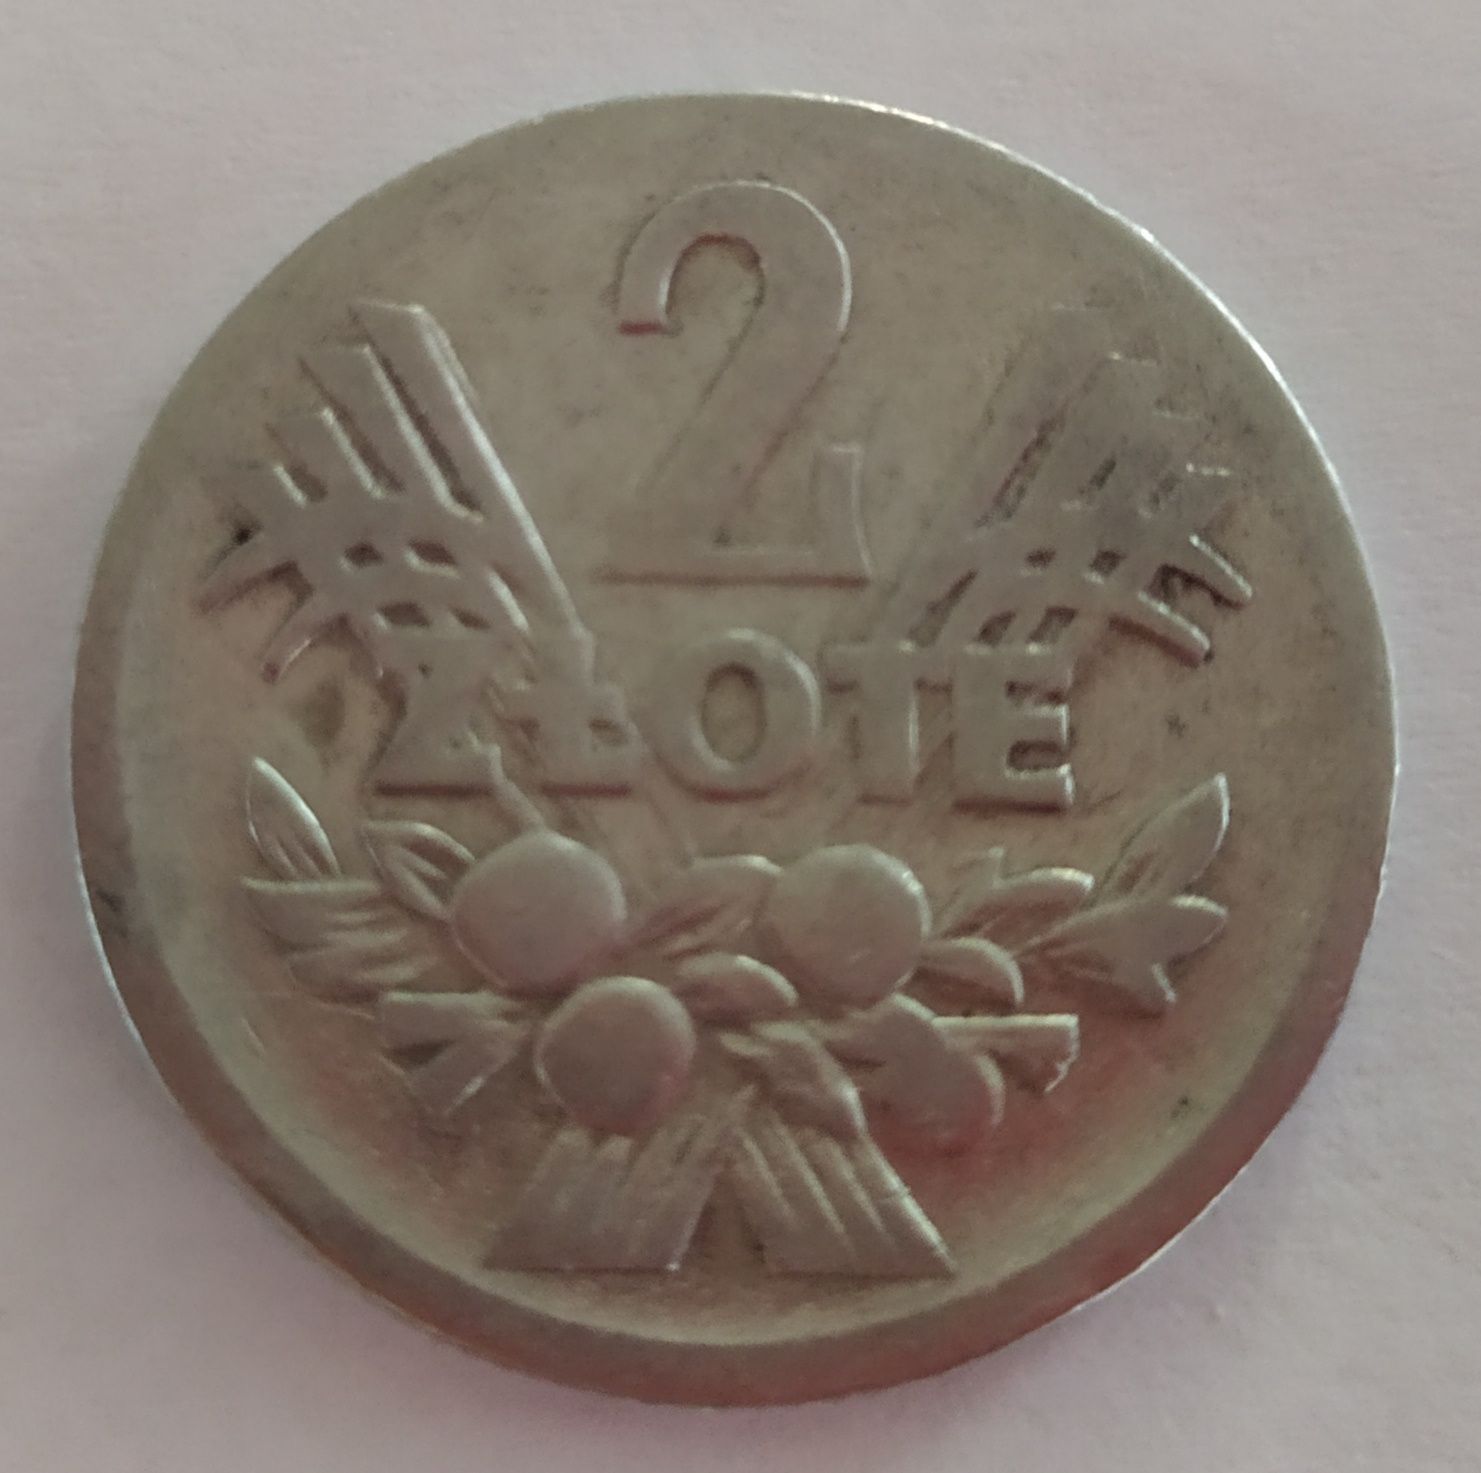 Moneta kolekcjonerska 2 zł z 1958 roku - JAGODY I KŁOSY